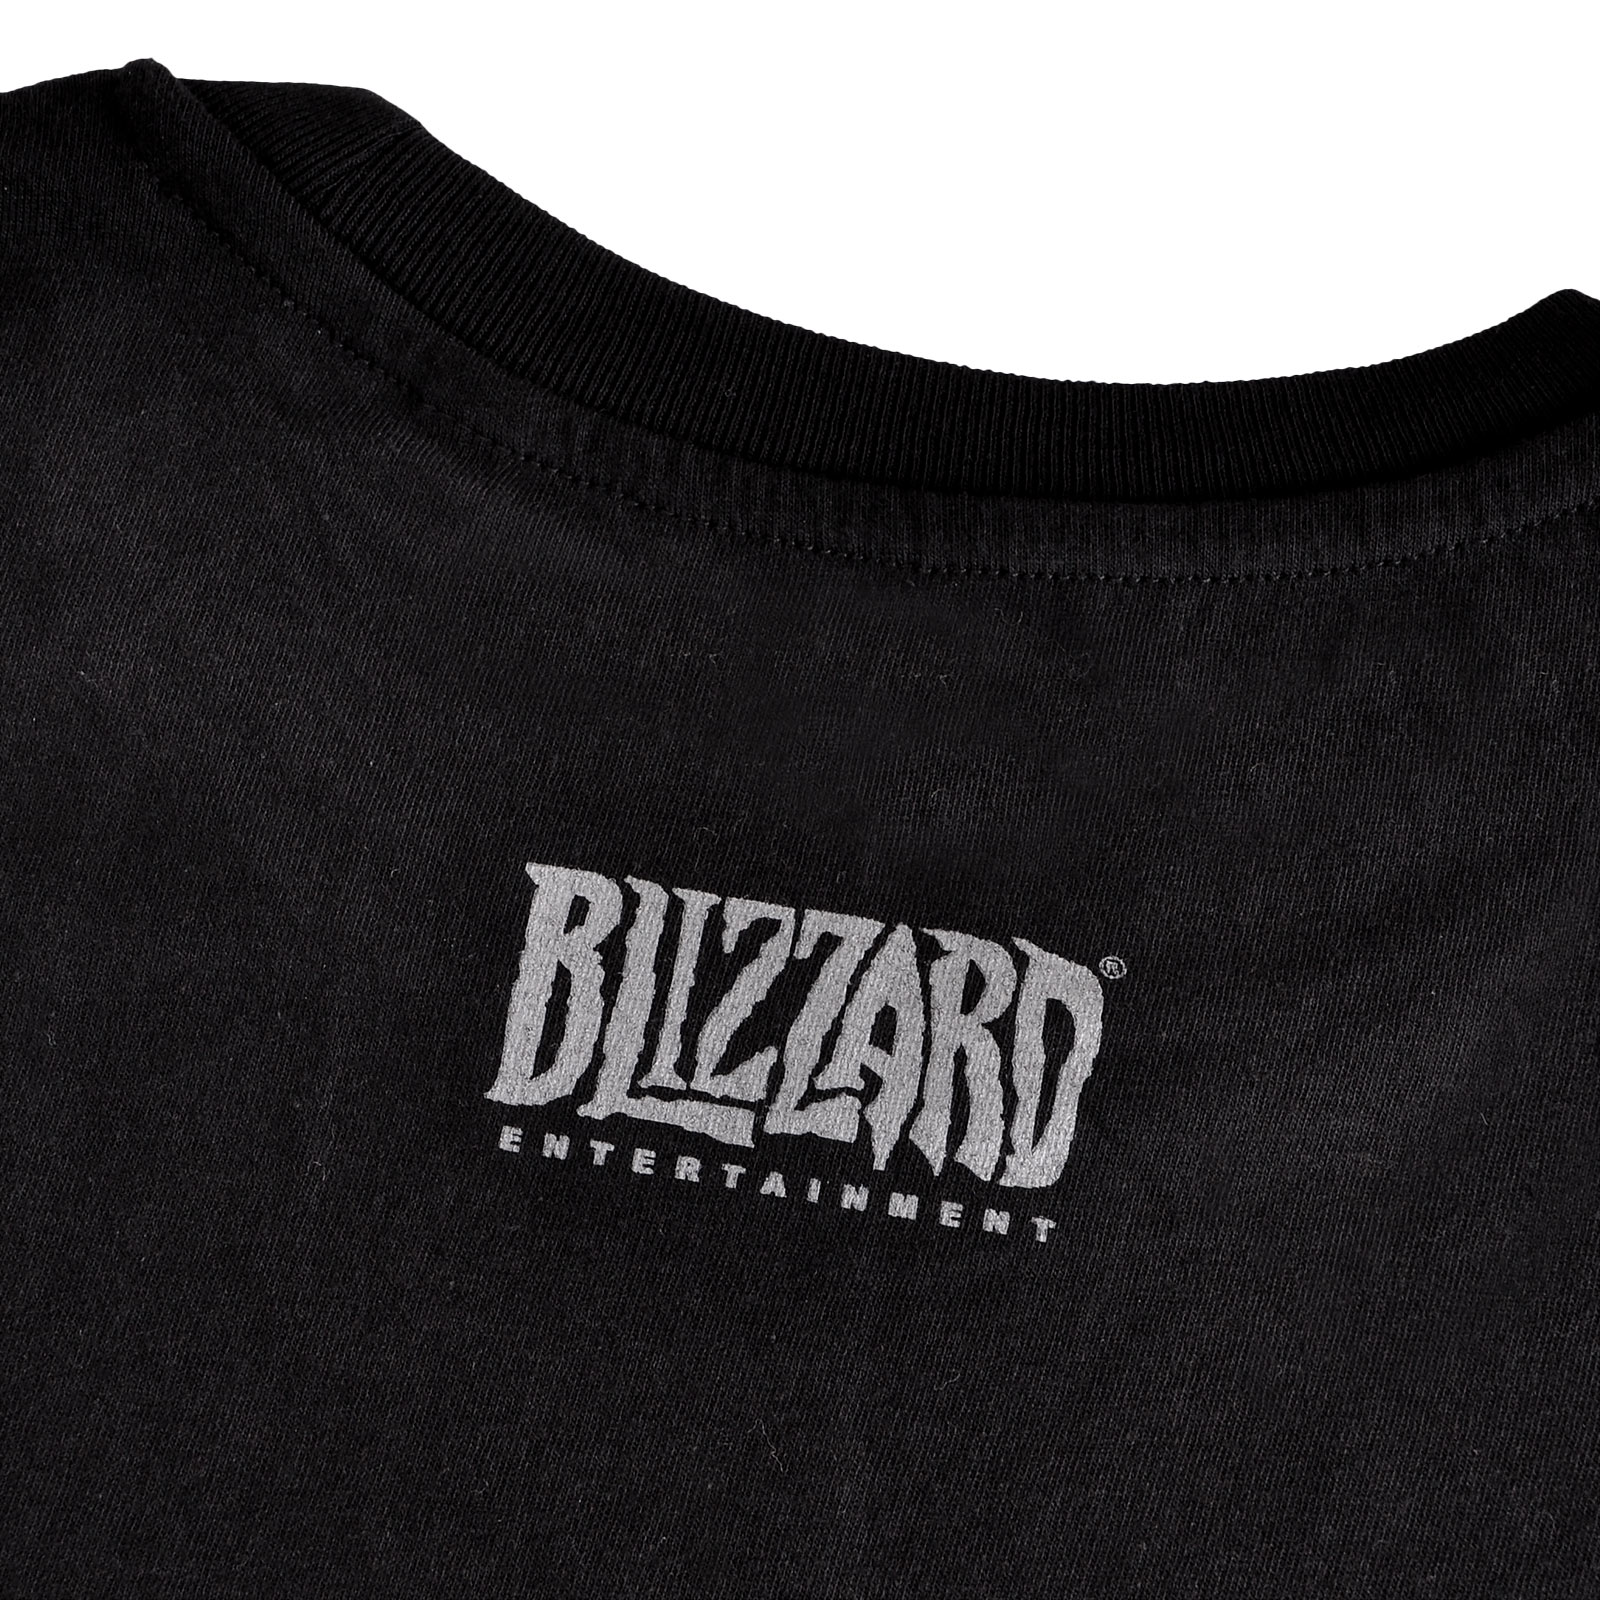 World of Warcraft - Horde Logo T-Shirt schwarz